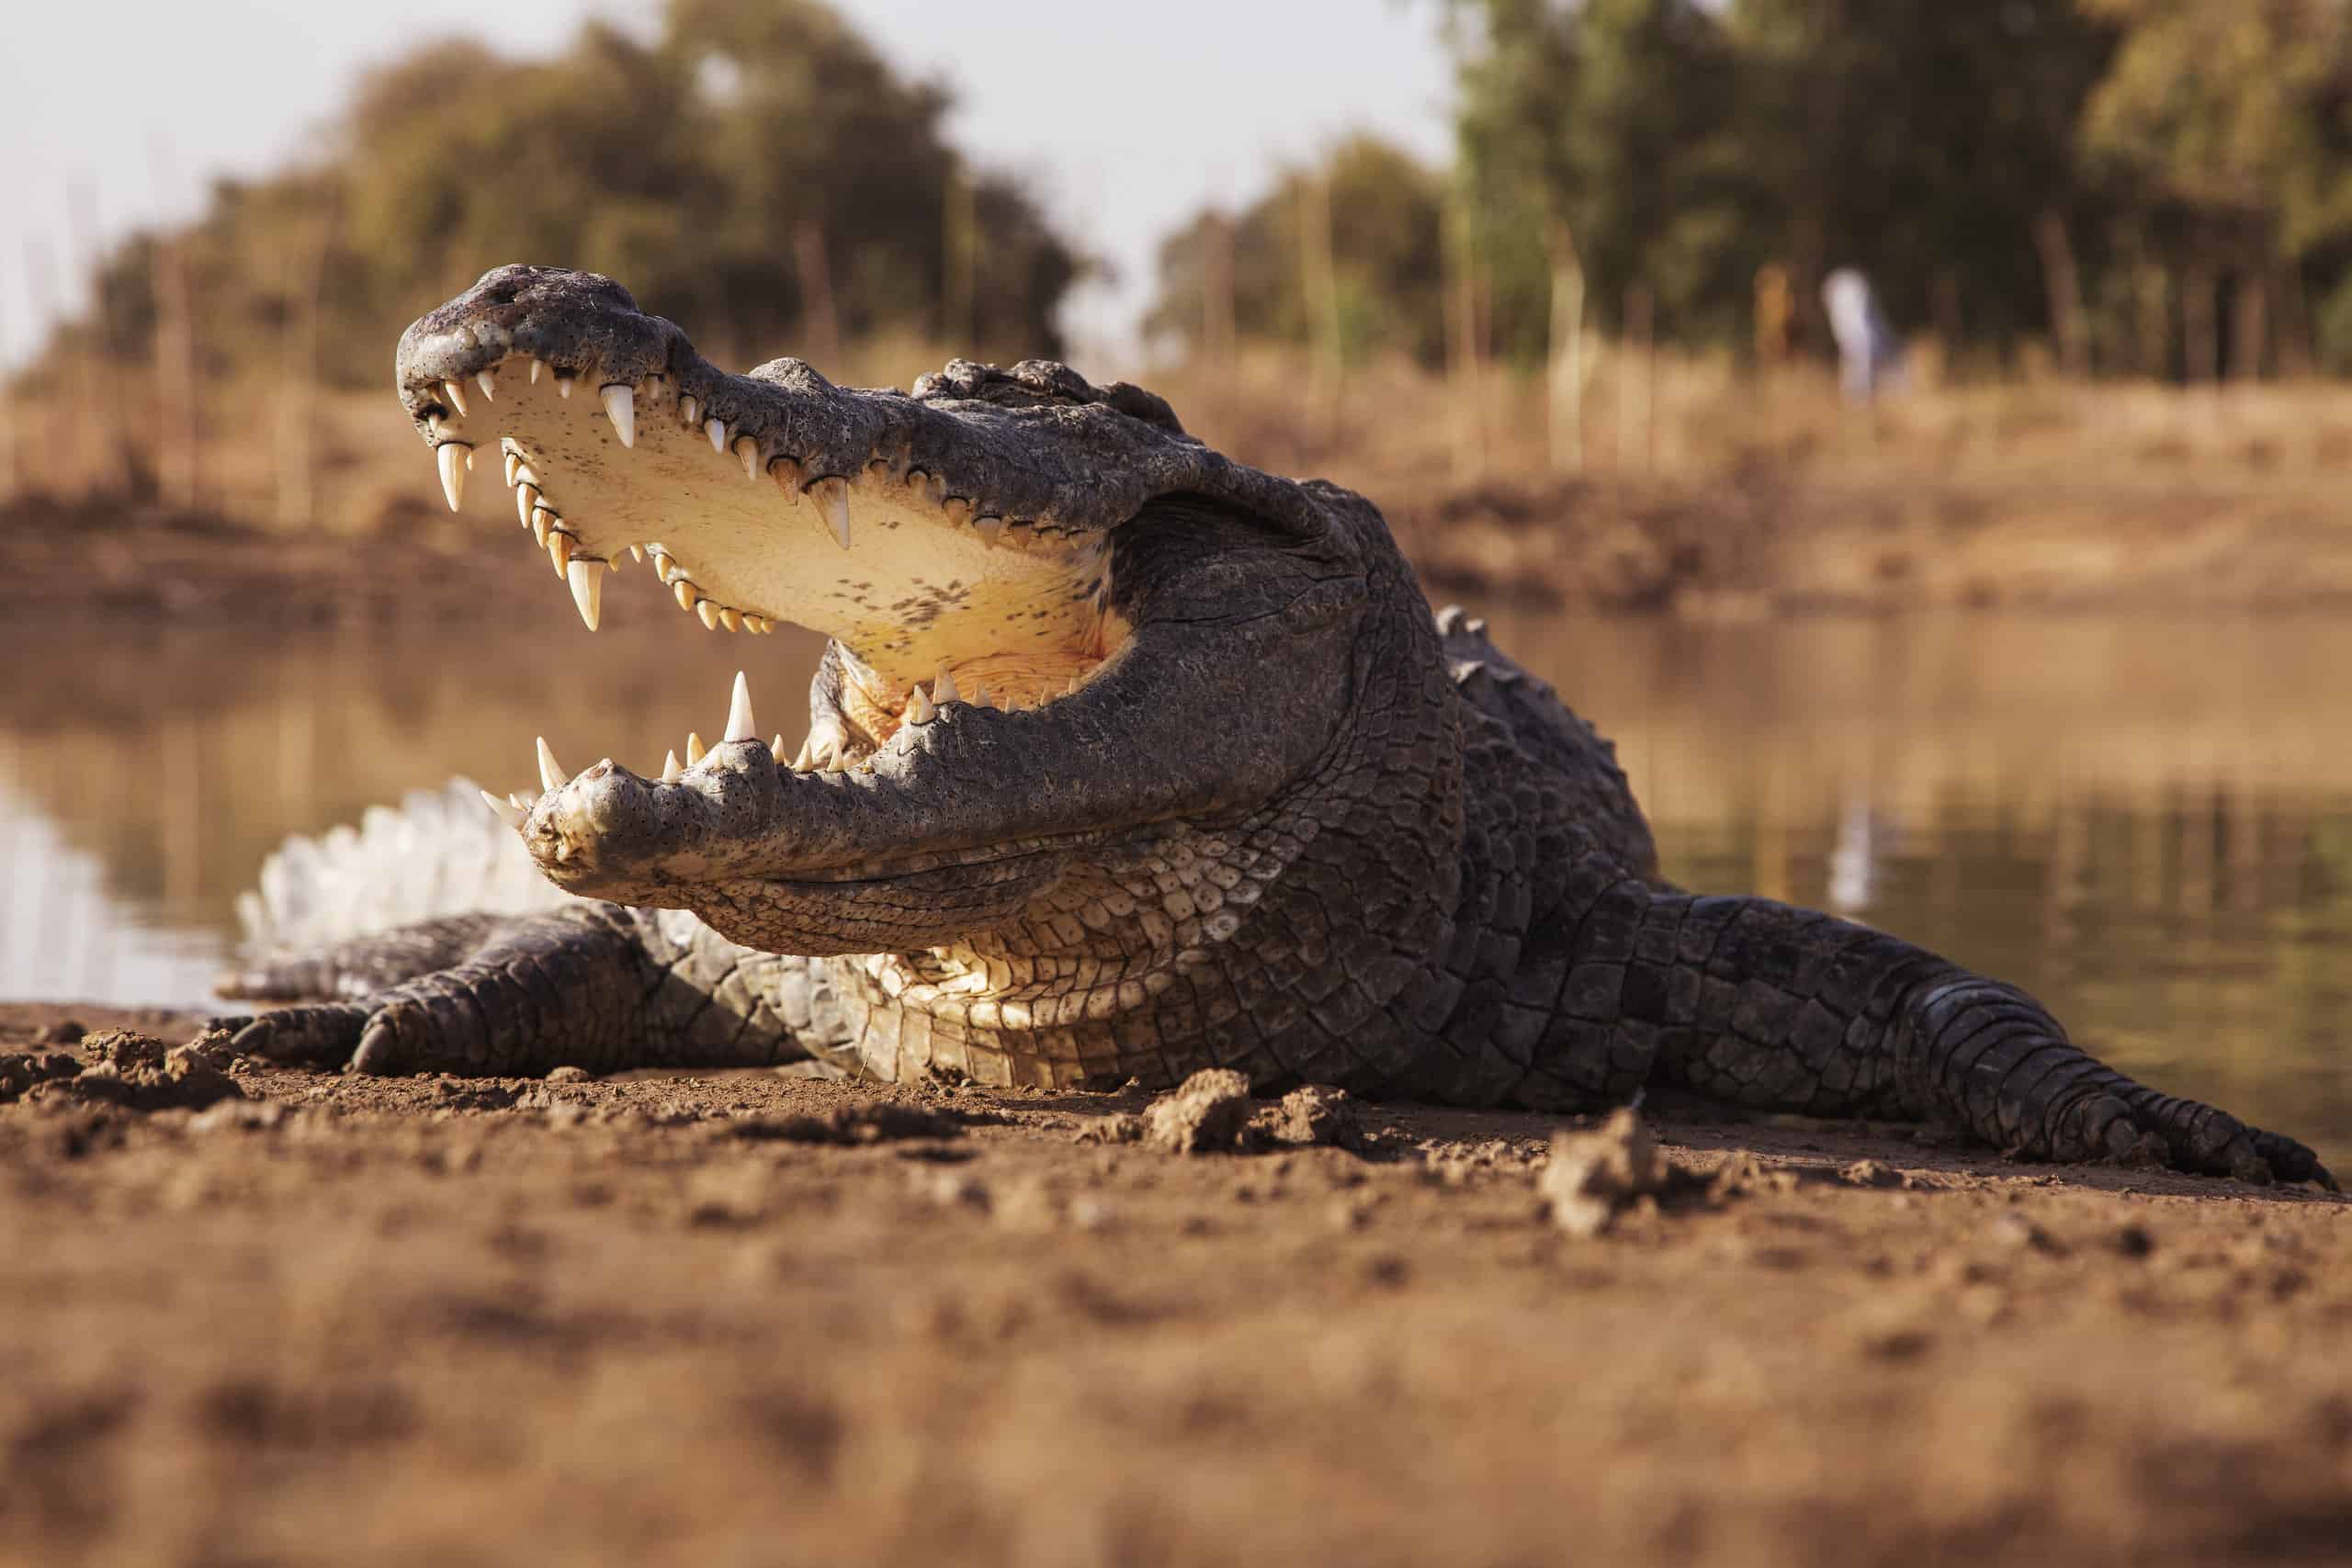 Nile crocodile jaws